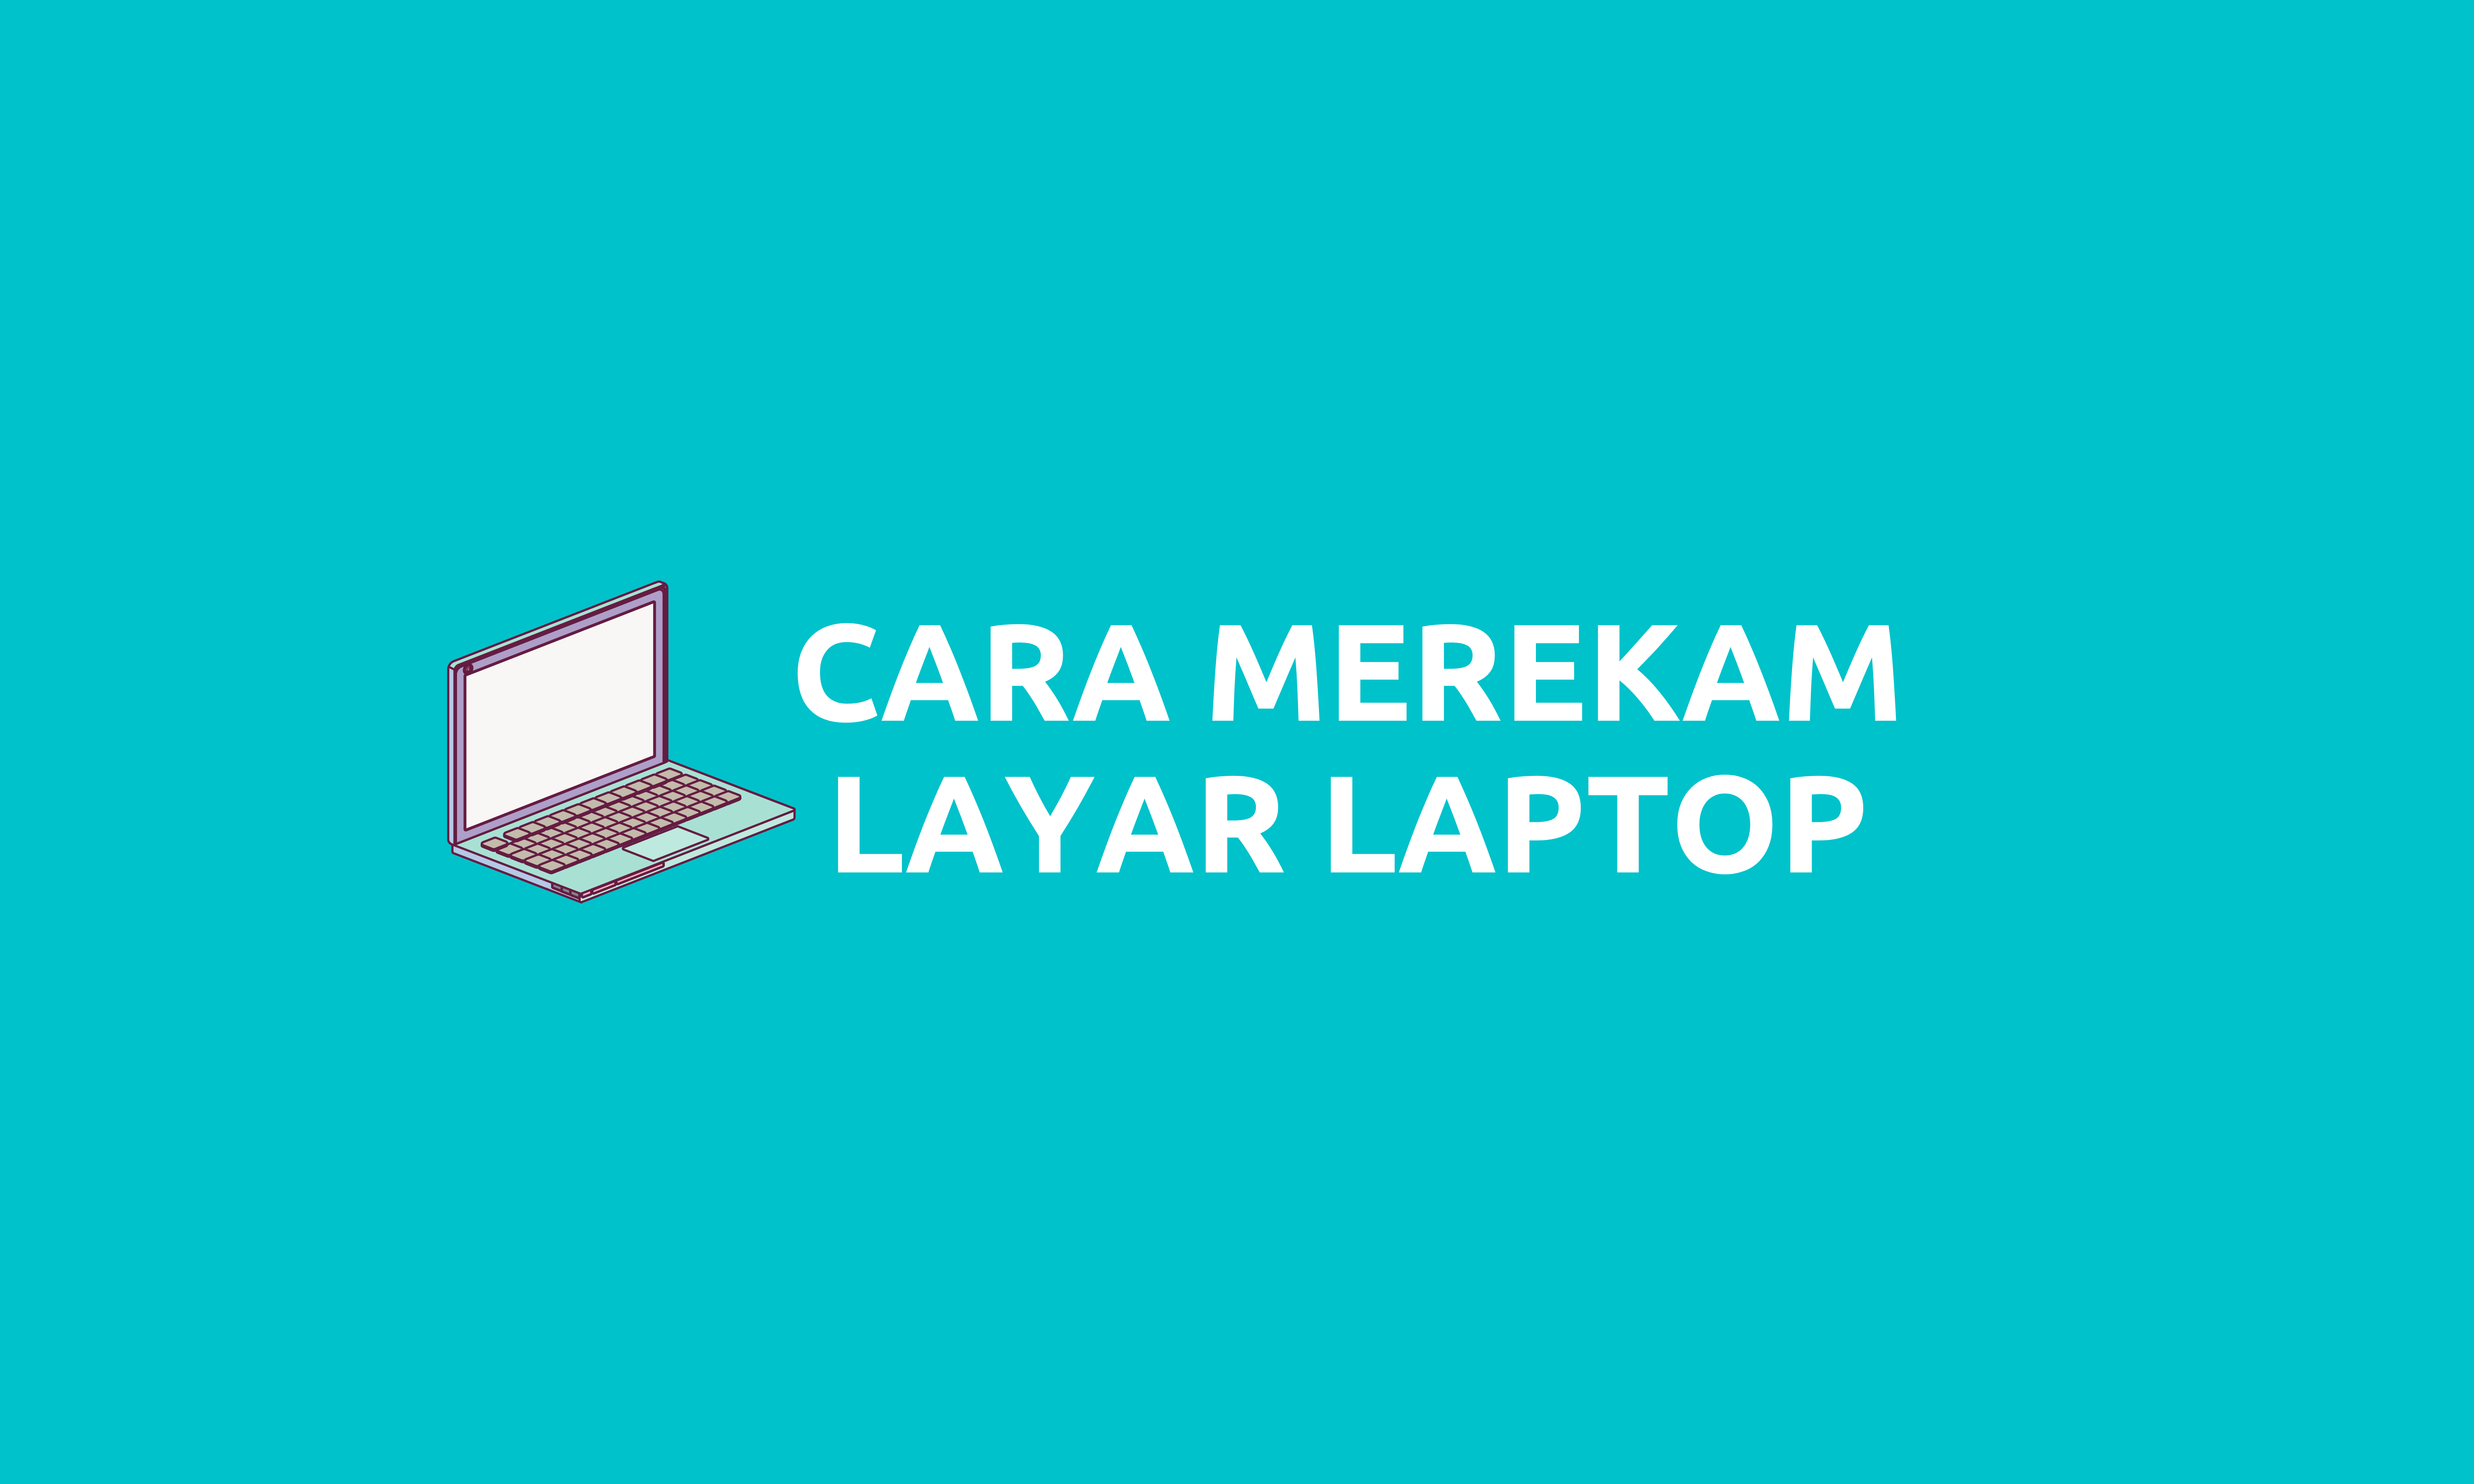 Cara Merekam Layar Laptop